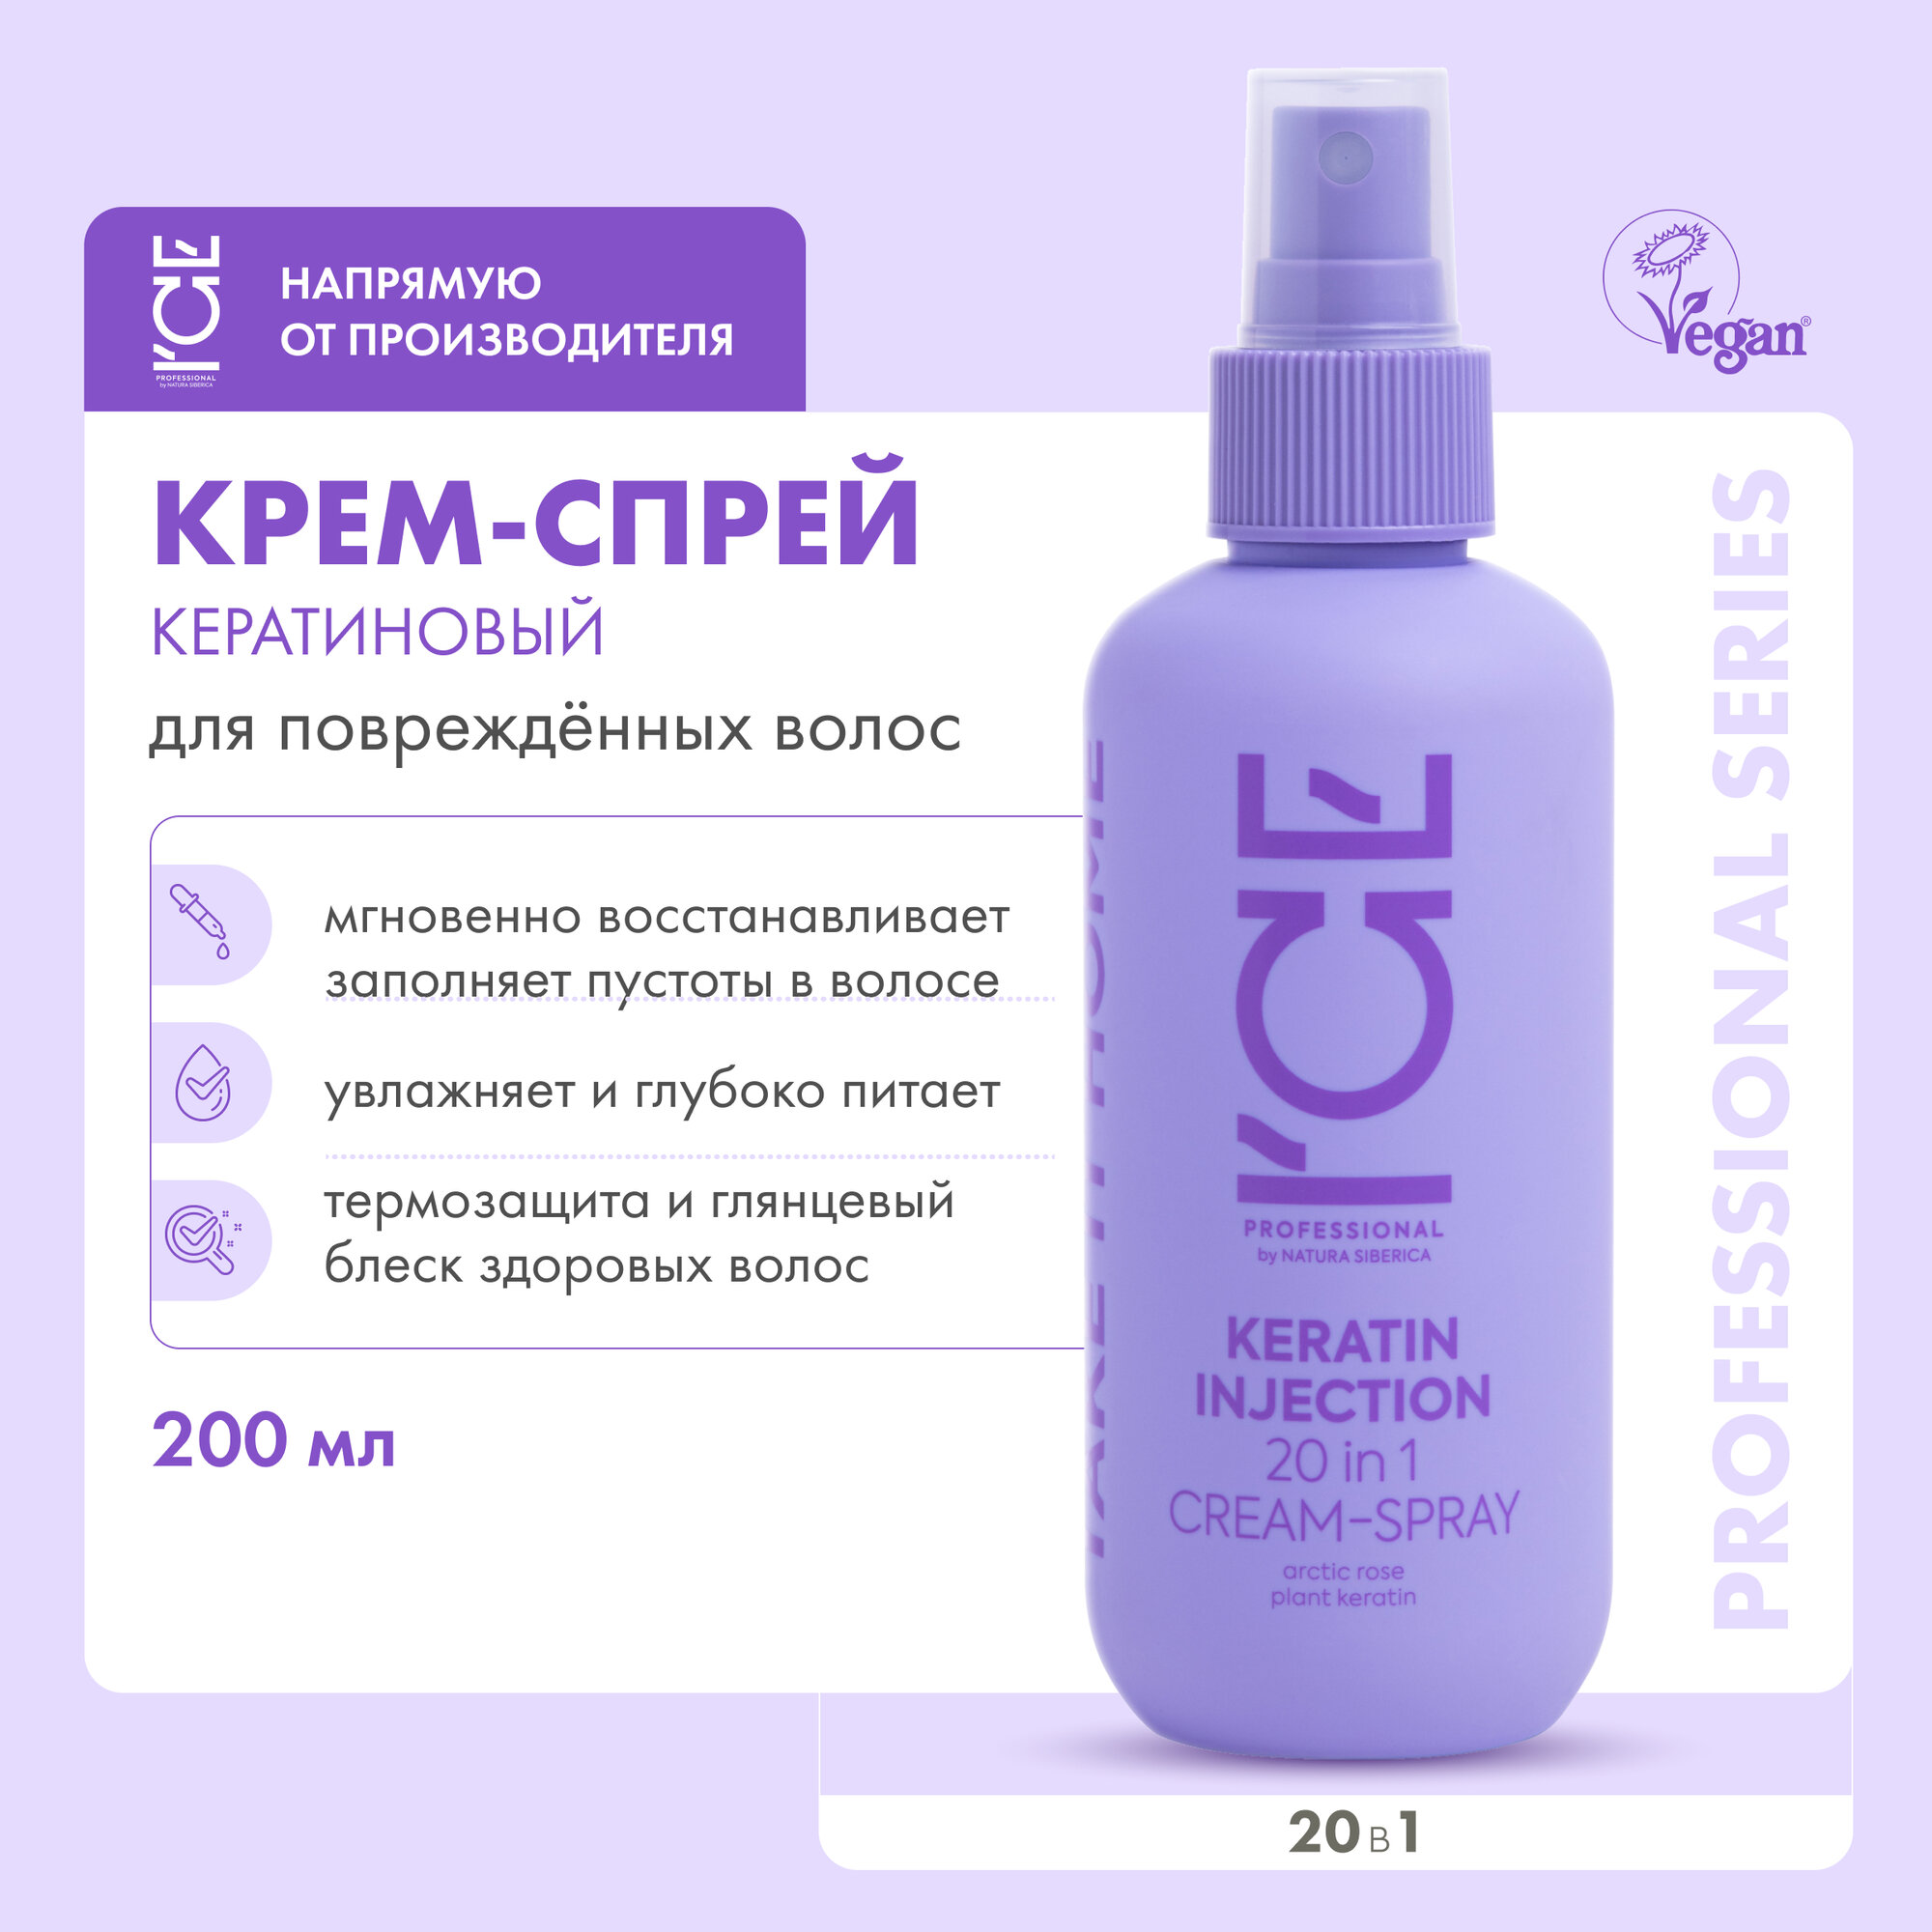 Кератиновый спрей для поврежденных волос 20 в 1 Keratin Injection ICE Professional by Natura Siberica, Take It Home, 200 мл